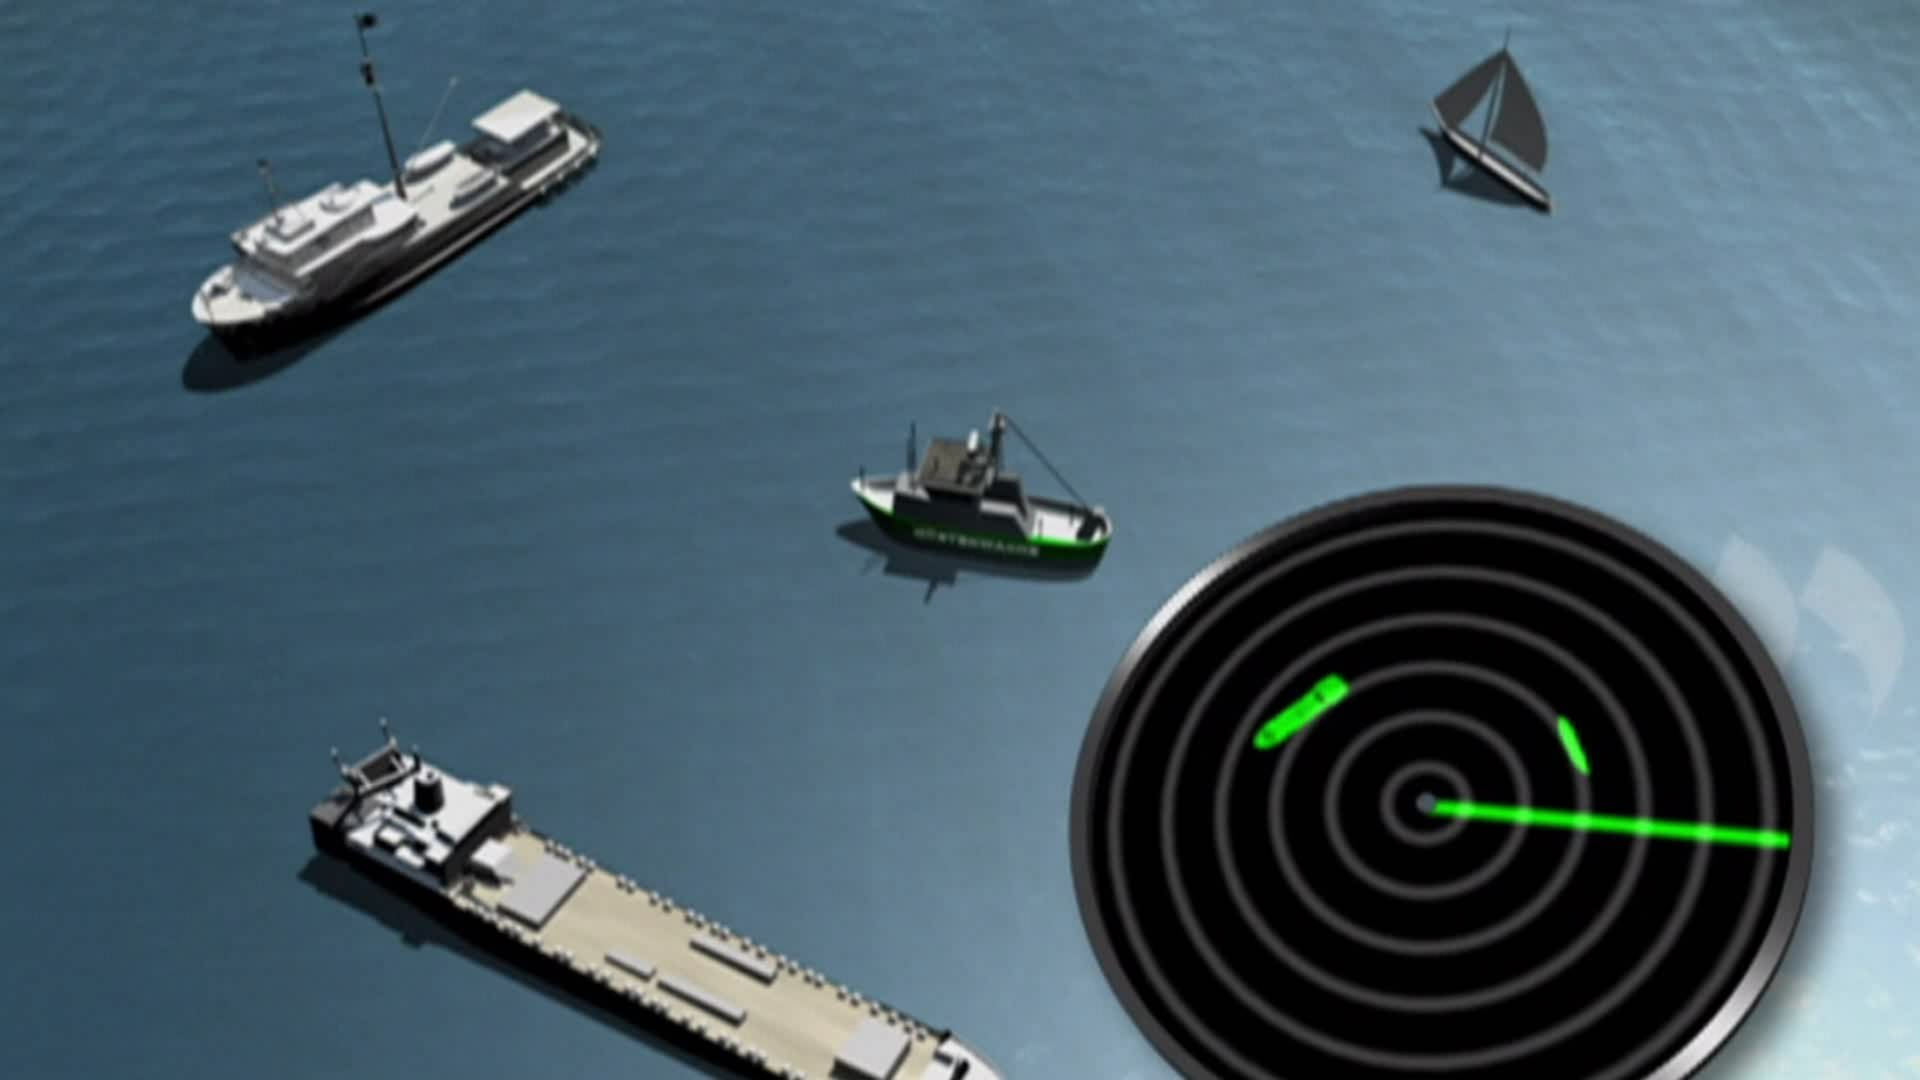 Wie funktioniert Radar? · Frage trifft Antwort